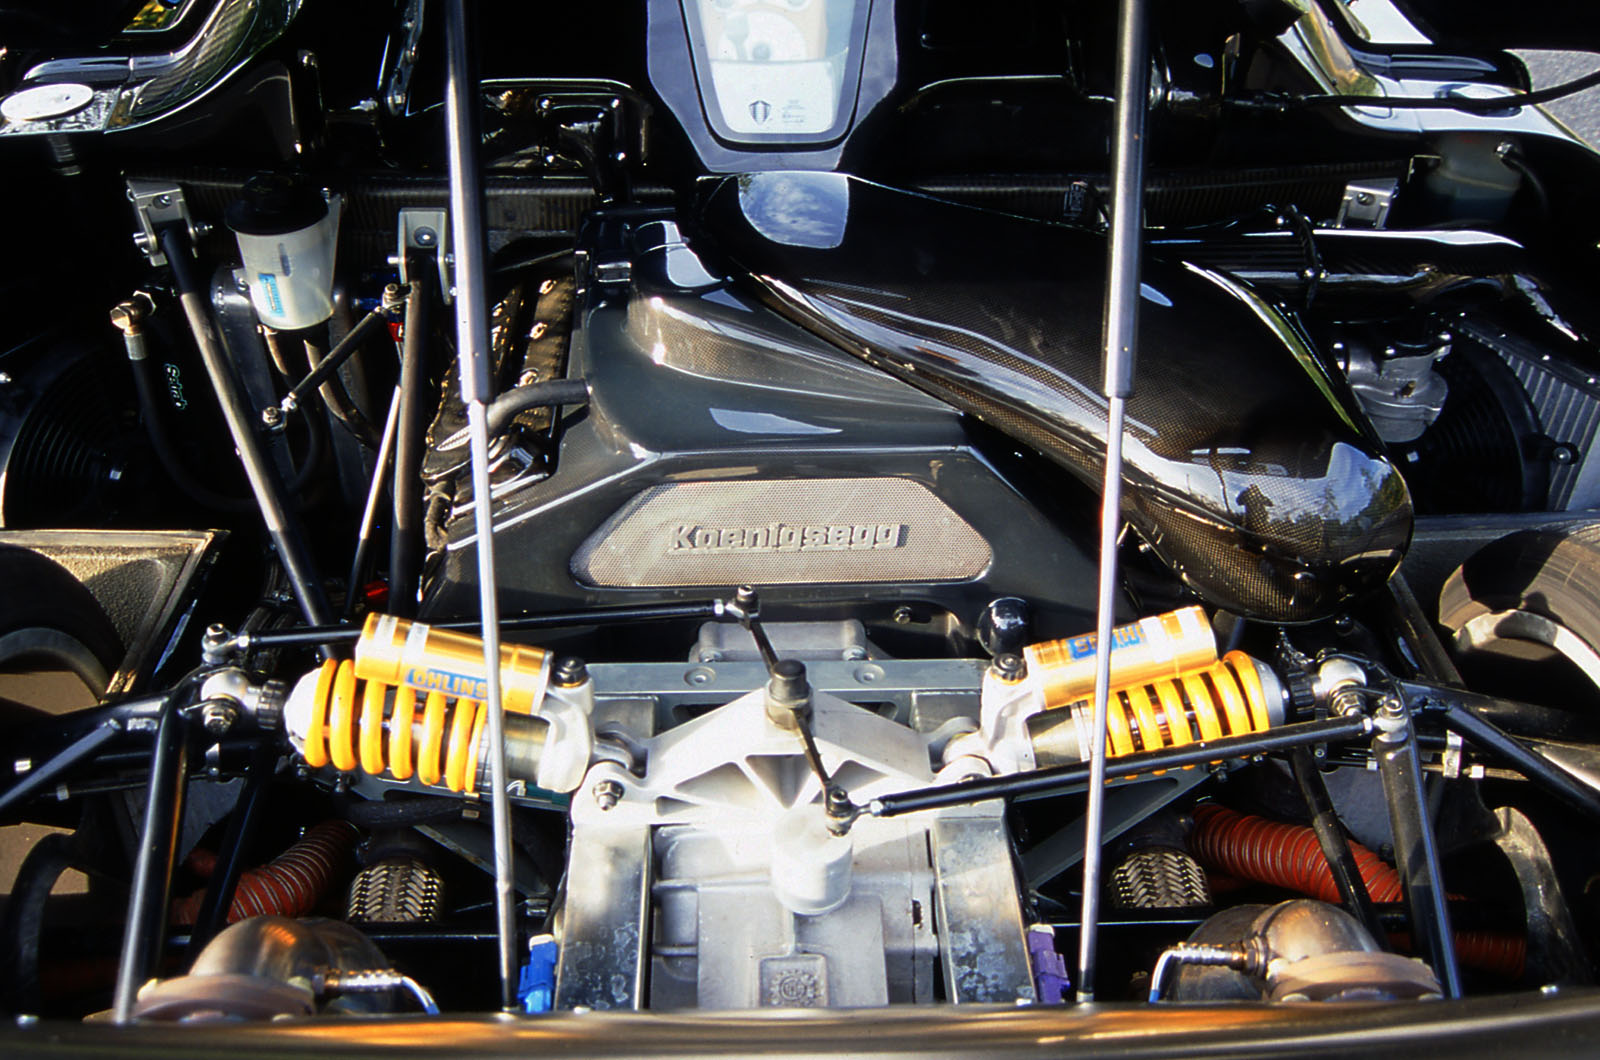 4.7-litre V8 Ford engine in the Koenigsegg